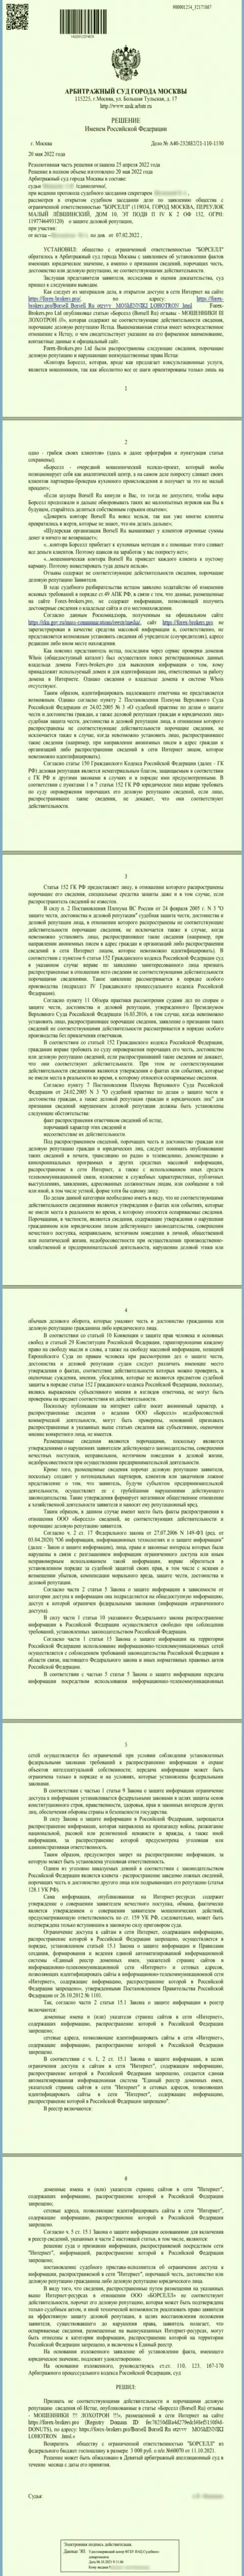 Скриншот решения суда по заявлению аналитической конторы ООО БОРСЕЛЛ